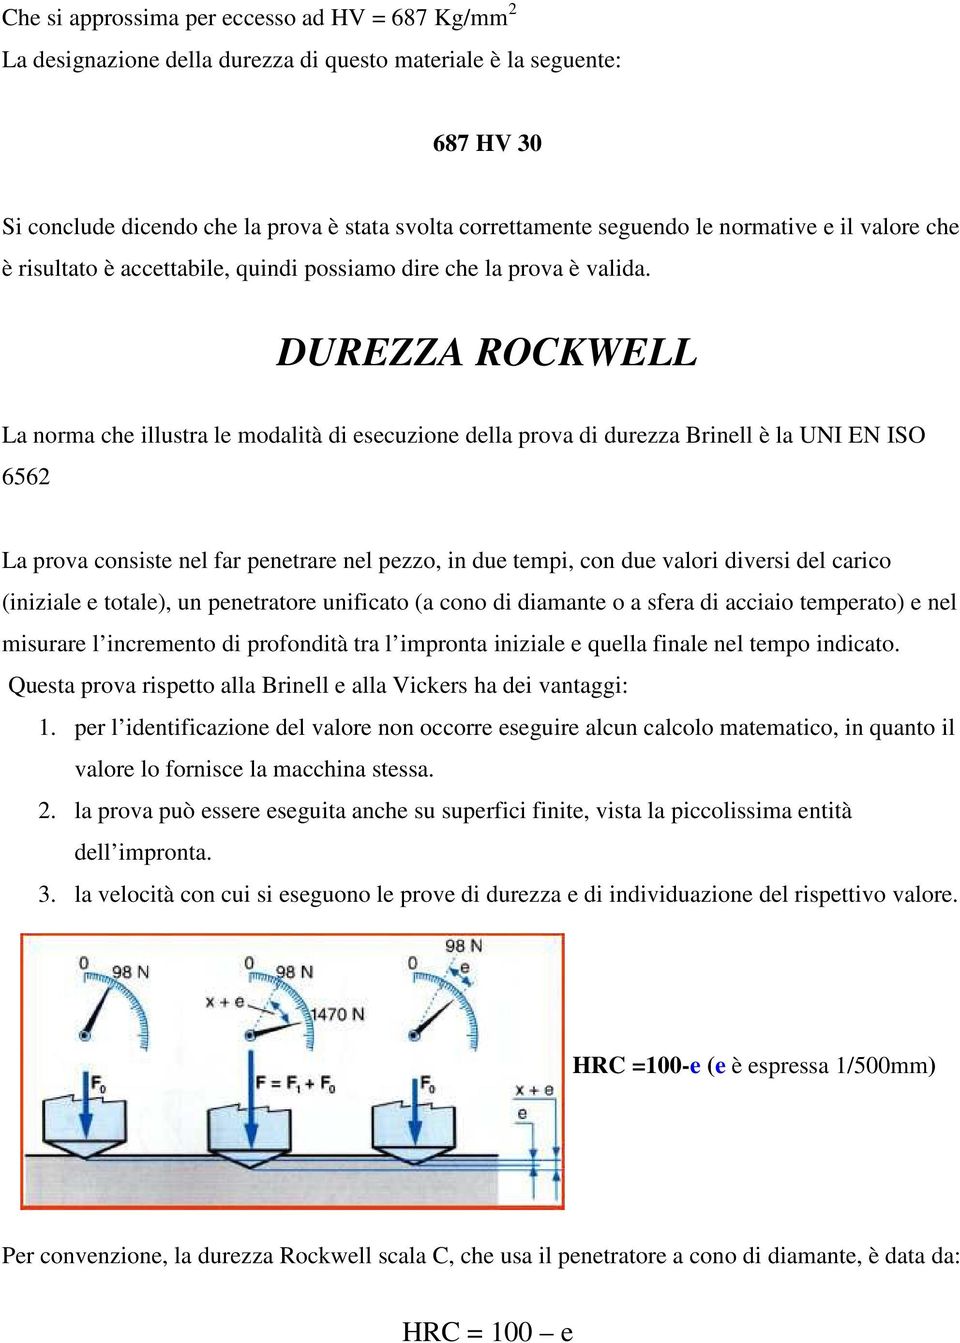 DUREZZA ROCKWELL La norma che illustra le modalità di esecuzione della prova di durezza Brinell è la UNI EN ISO 6562 La prova consiste nel far penetrare nel pezzo, in due tempi, con due valori